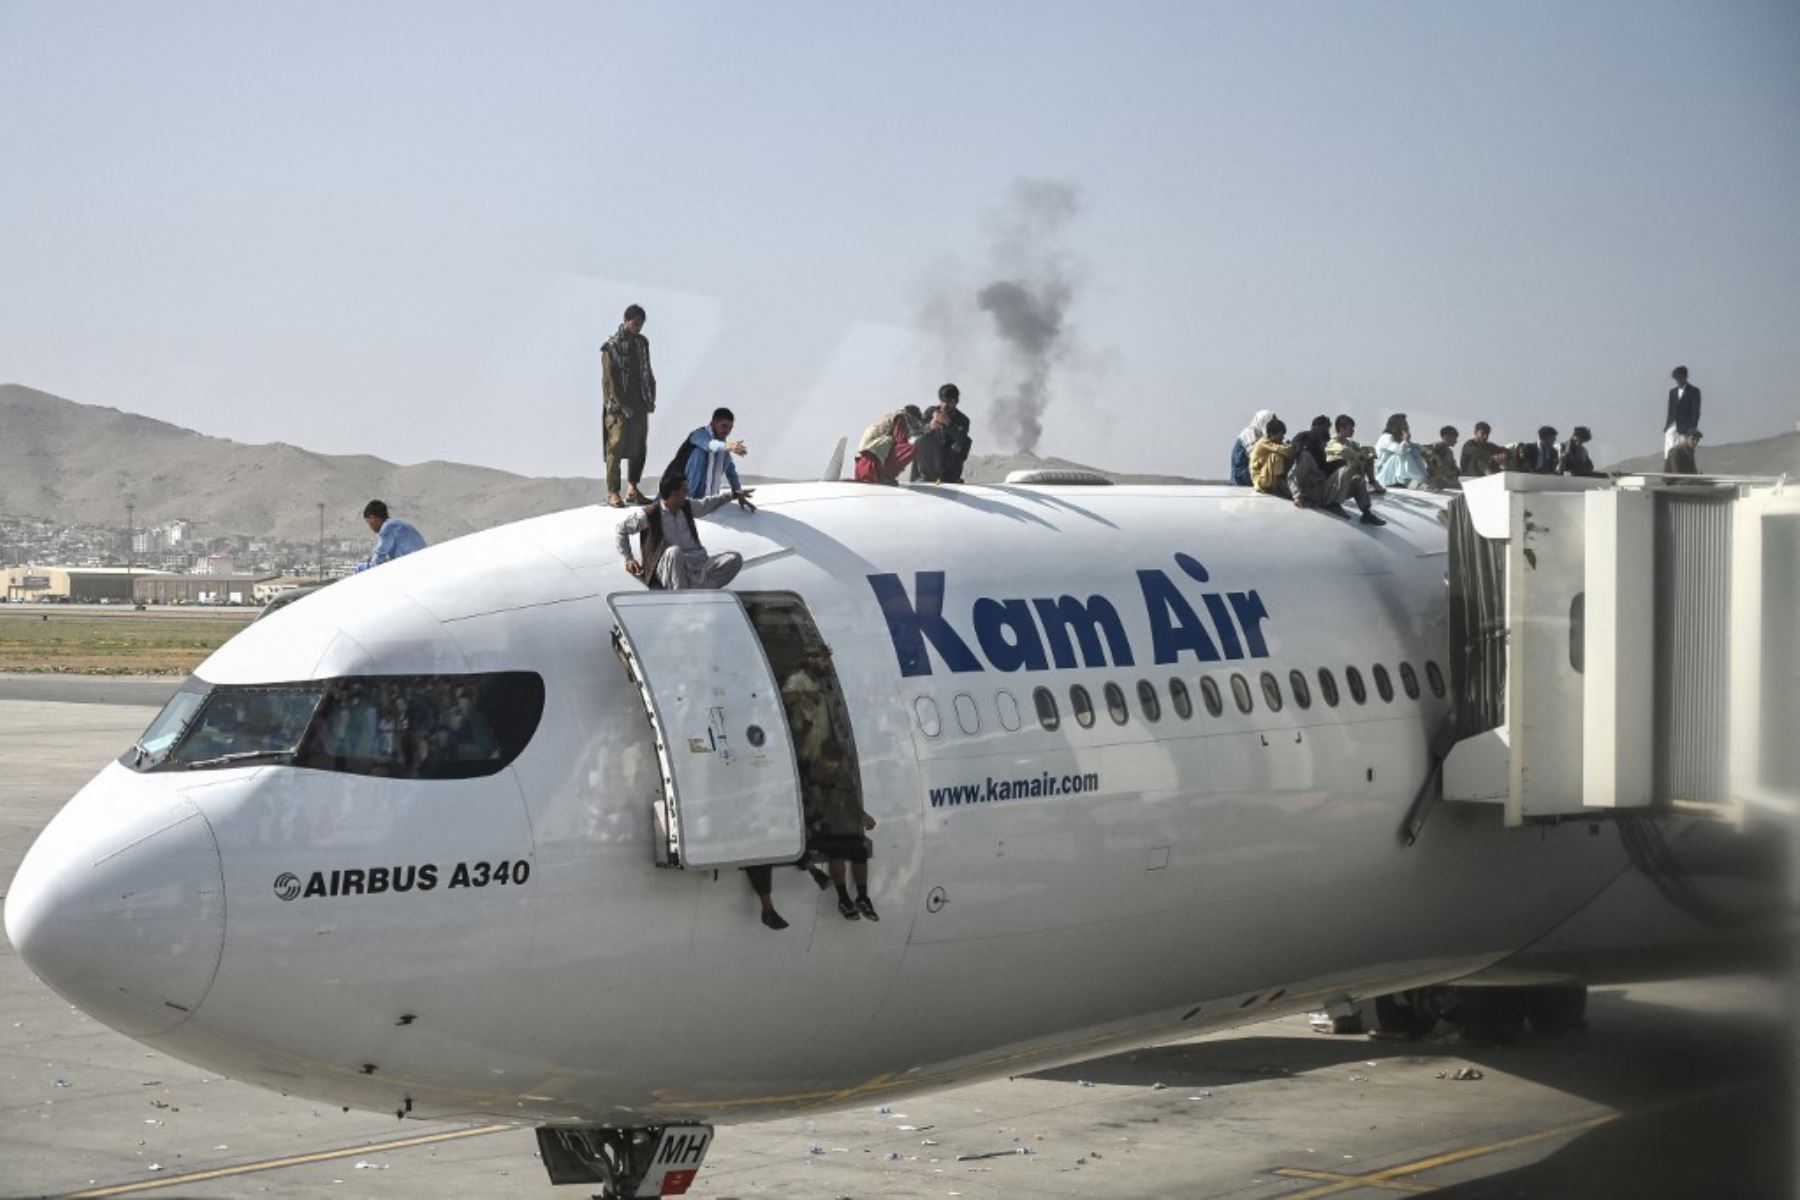 Afganos suben a un avión mientras esperan en el aeropuerto de Kabul  después del de la guerra de 20 años de Afganistán, mientras miles de personas asaltaron el aeropuerto de la ciudad tratando de huir de la temida marca de línea dura del grupo.

Foto: AFP